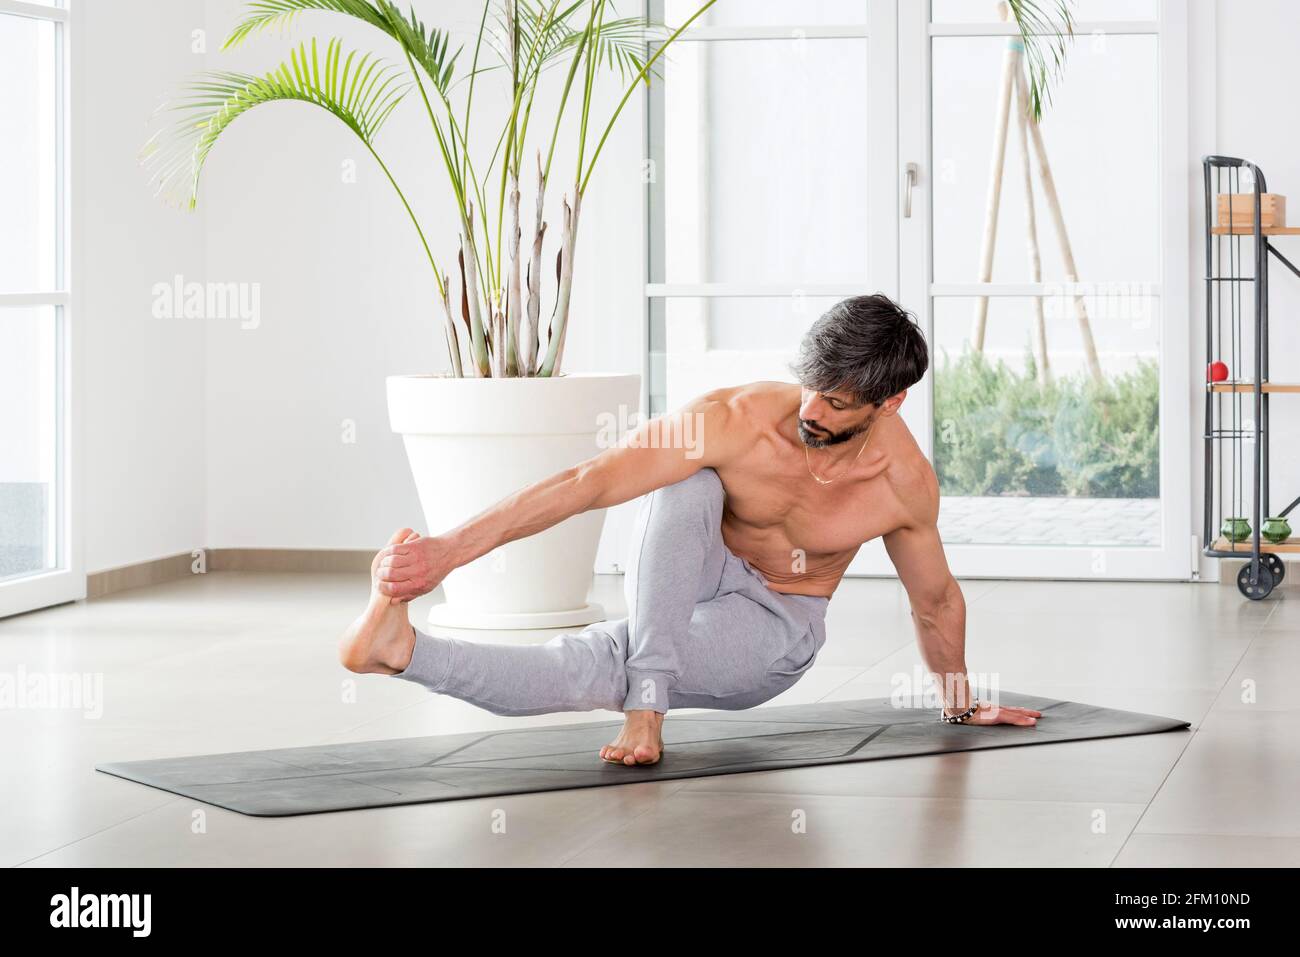 Sportif sportif homme faisant une posture d'équilibre de yoga s'étirant à saisissez ses orteils pour augmenter la mobilité et renforcer ses muscles dans une salle de gym avec copie Banque D'Images